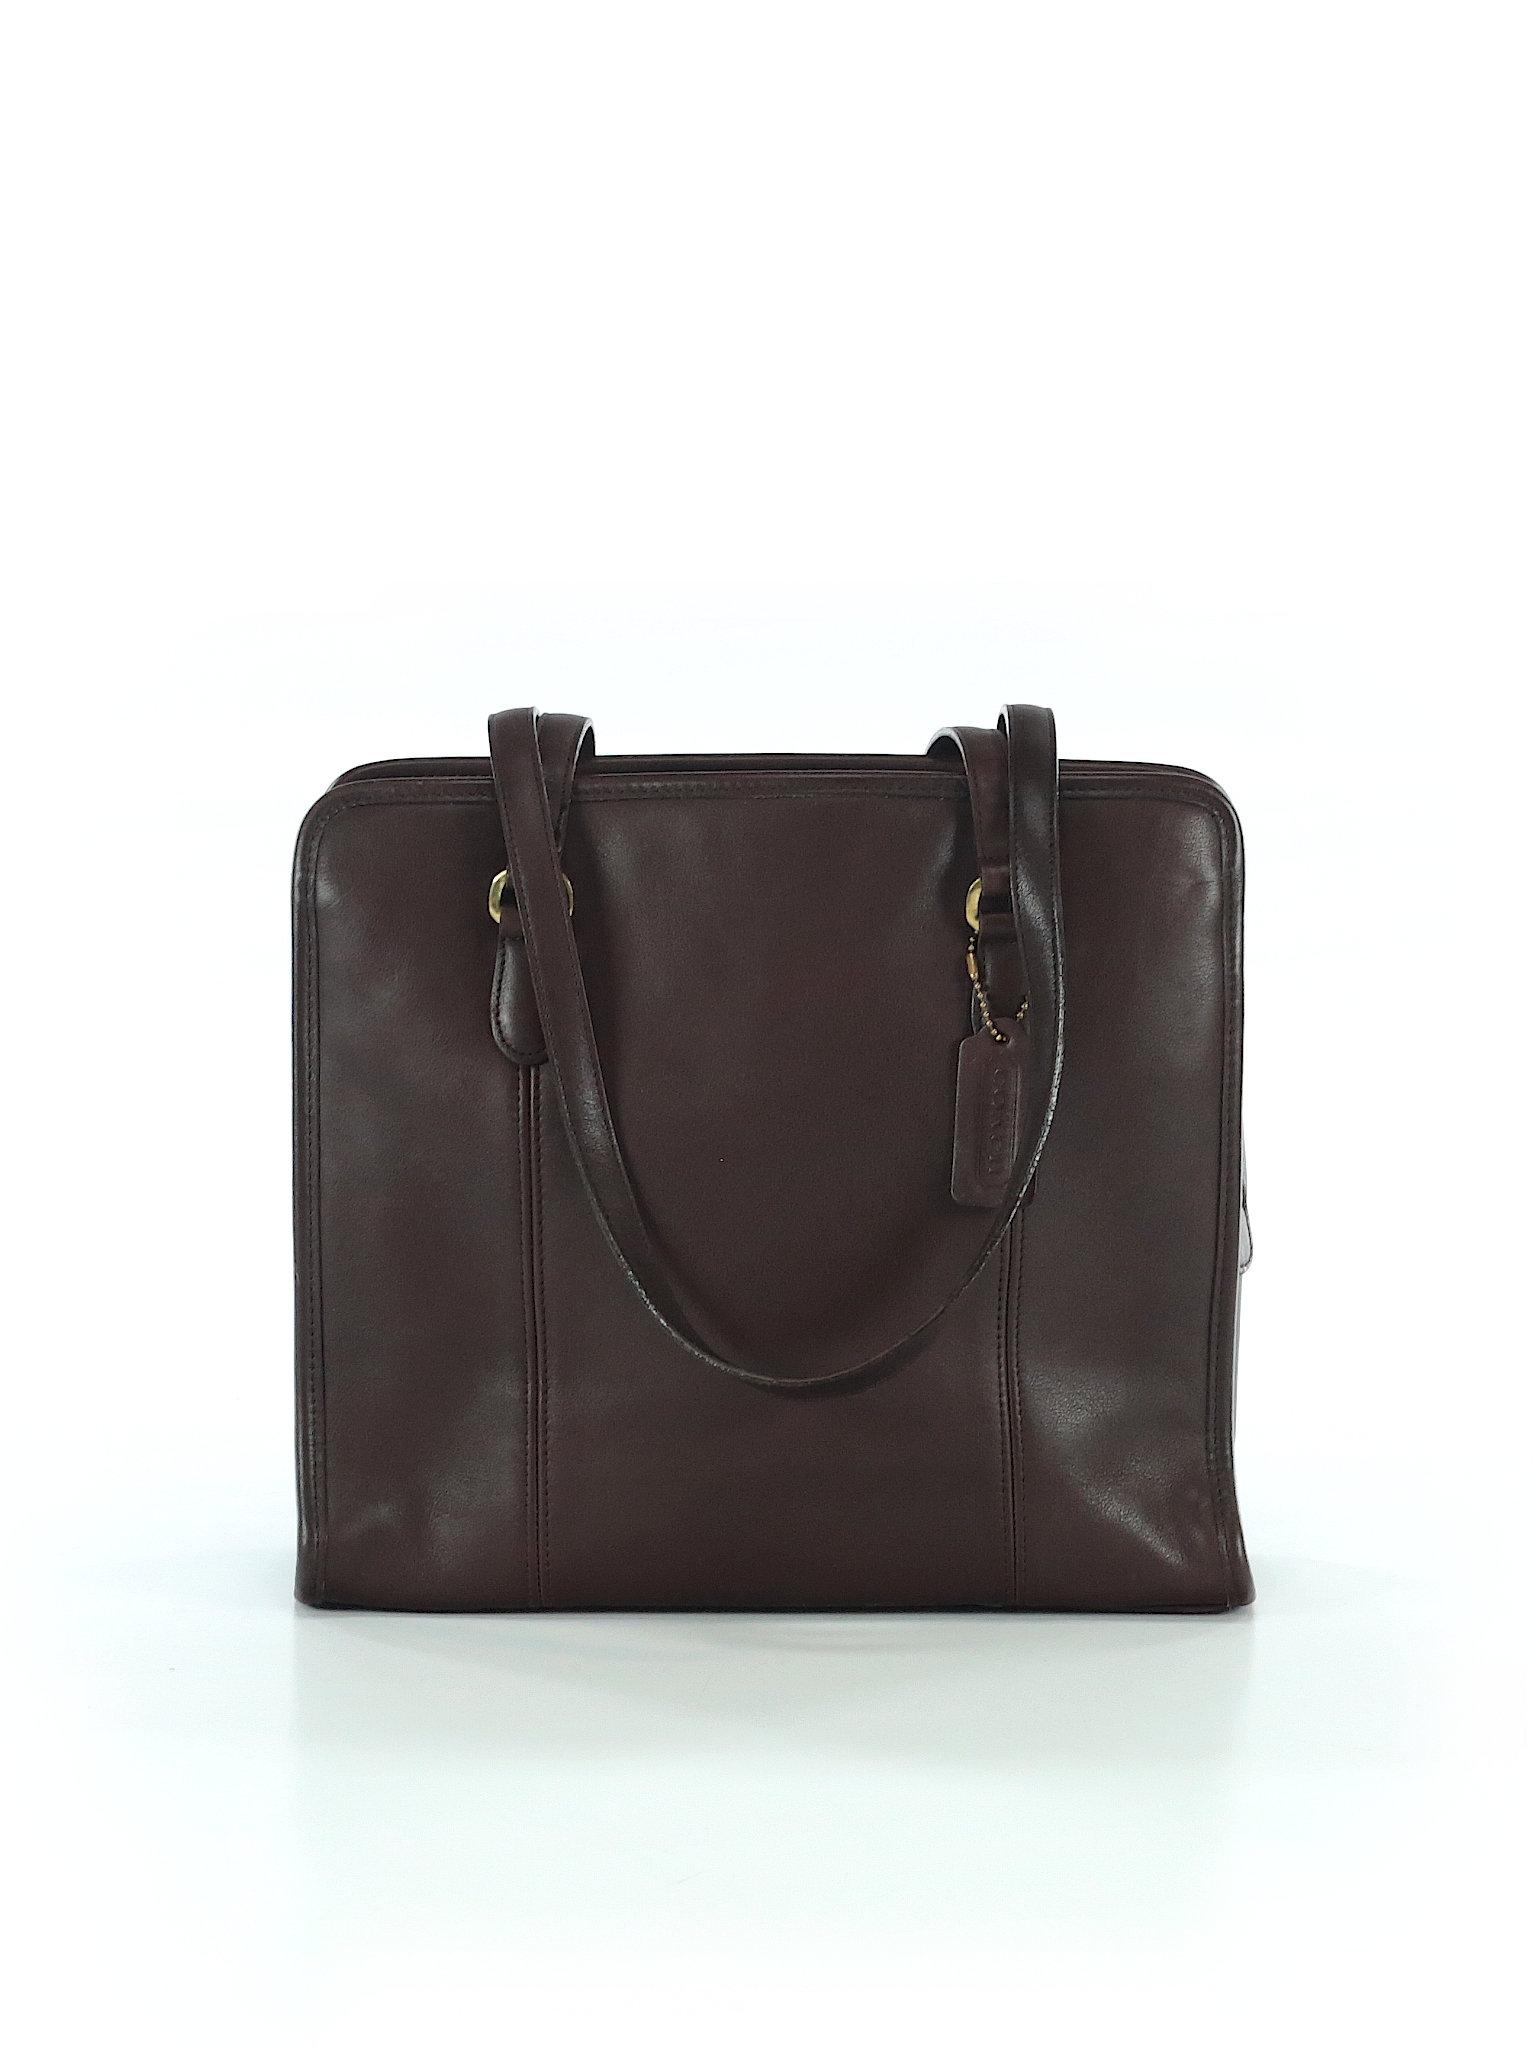 Coach Solid Brown Shoulder Bag One Size - 81% off | thredUP